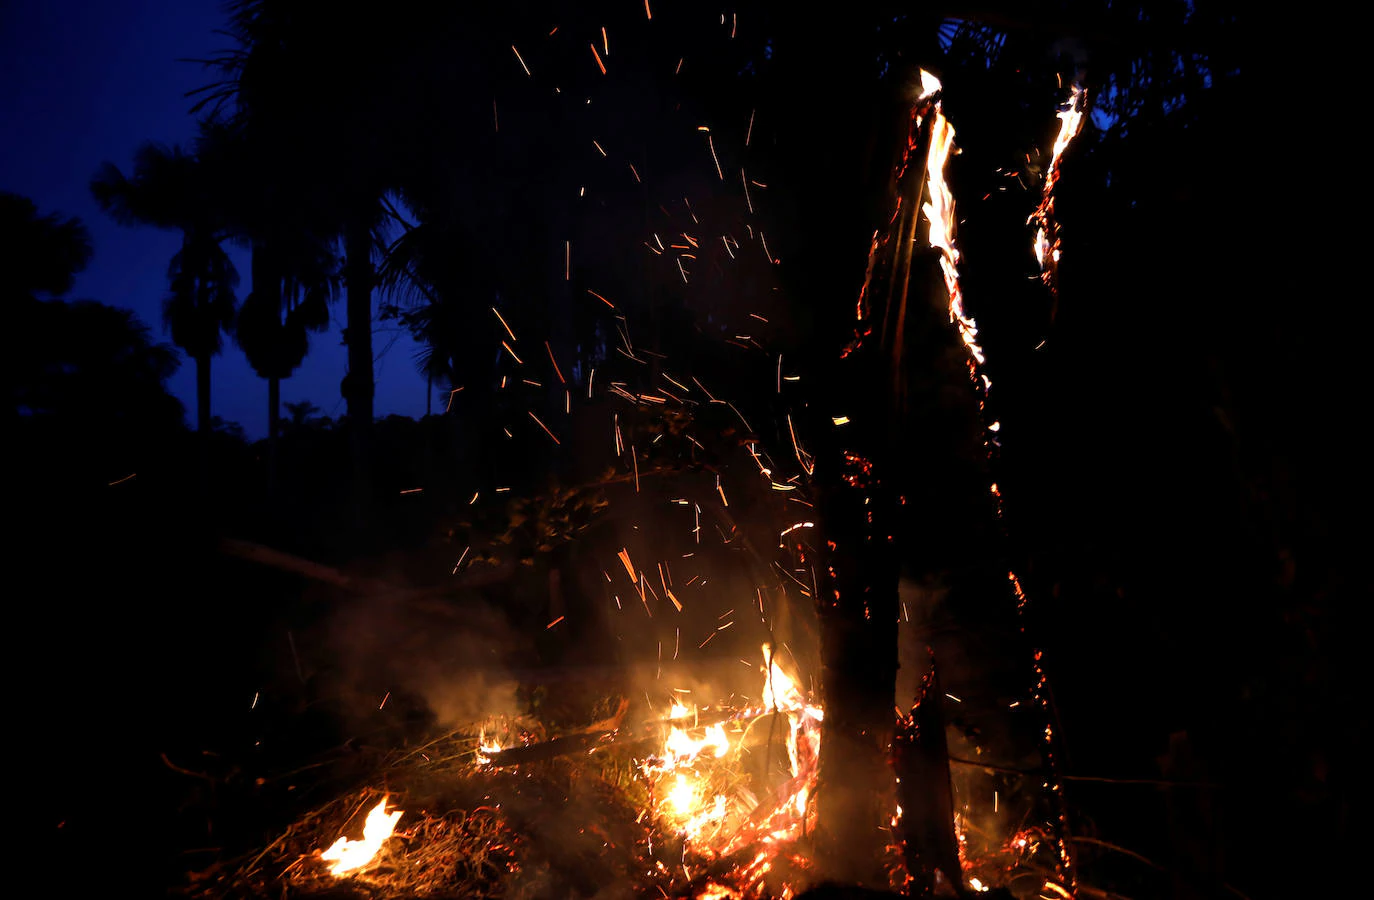 Imagen del incendio en la Amazonia captado por la Nasa.